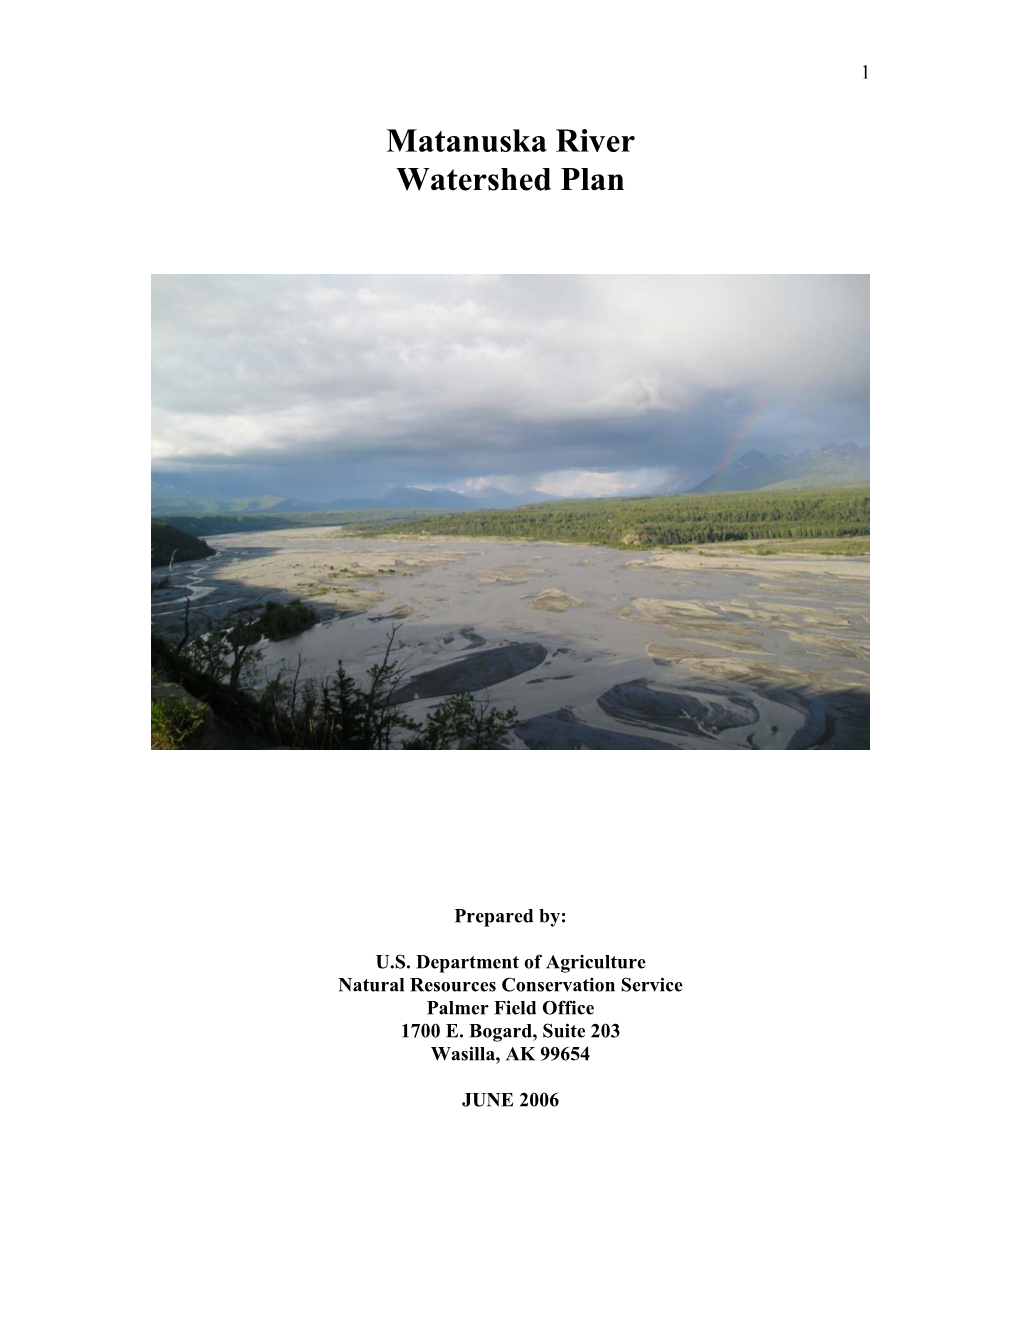 Matanuska River Watershed Plan